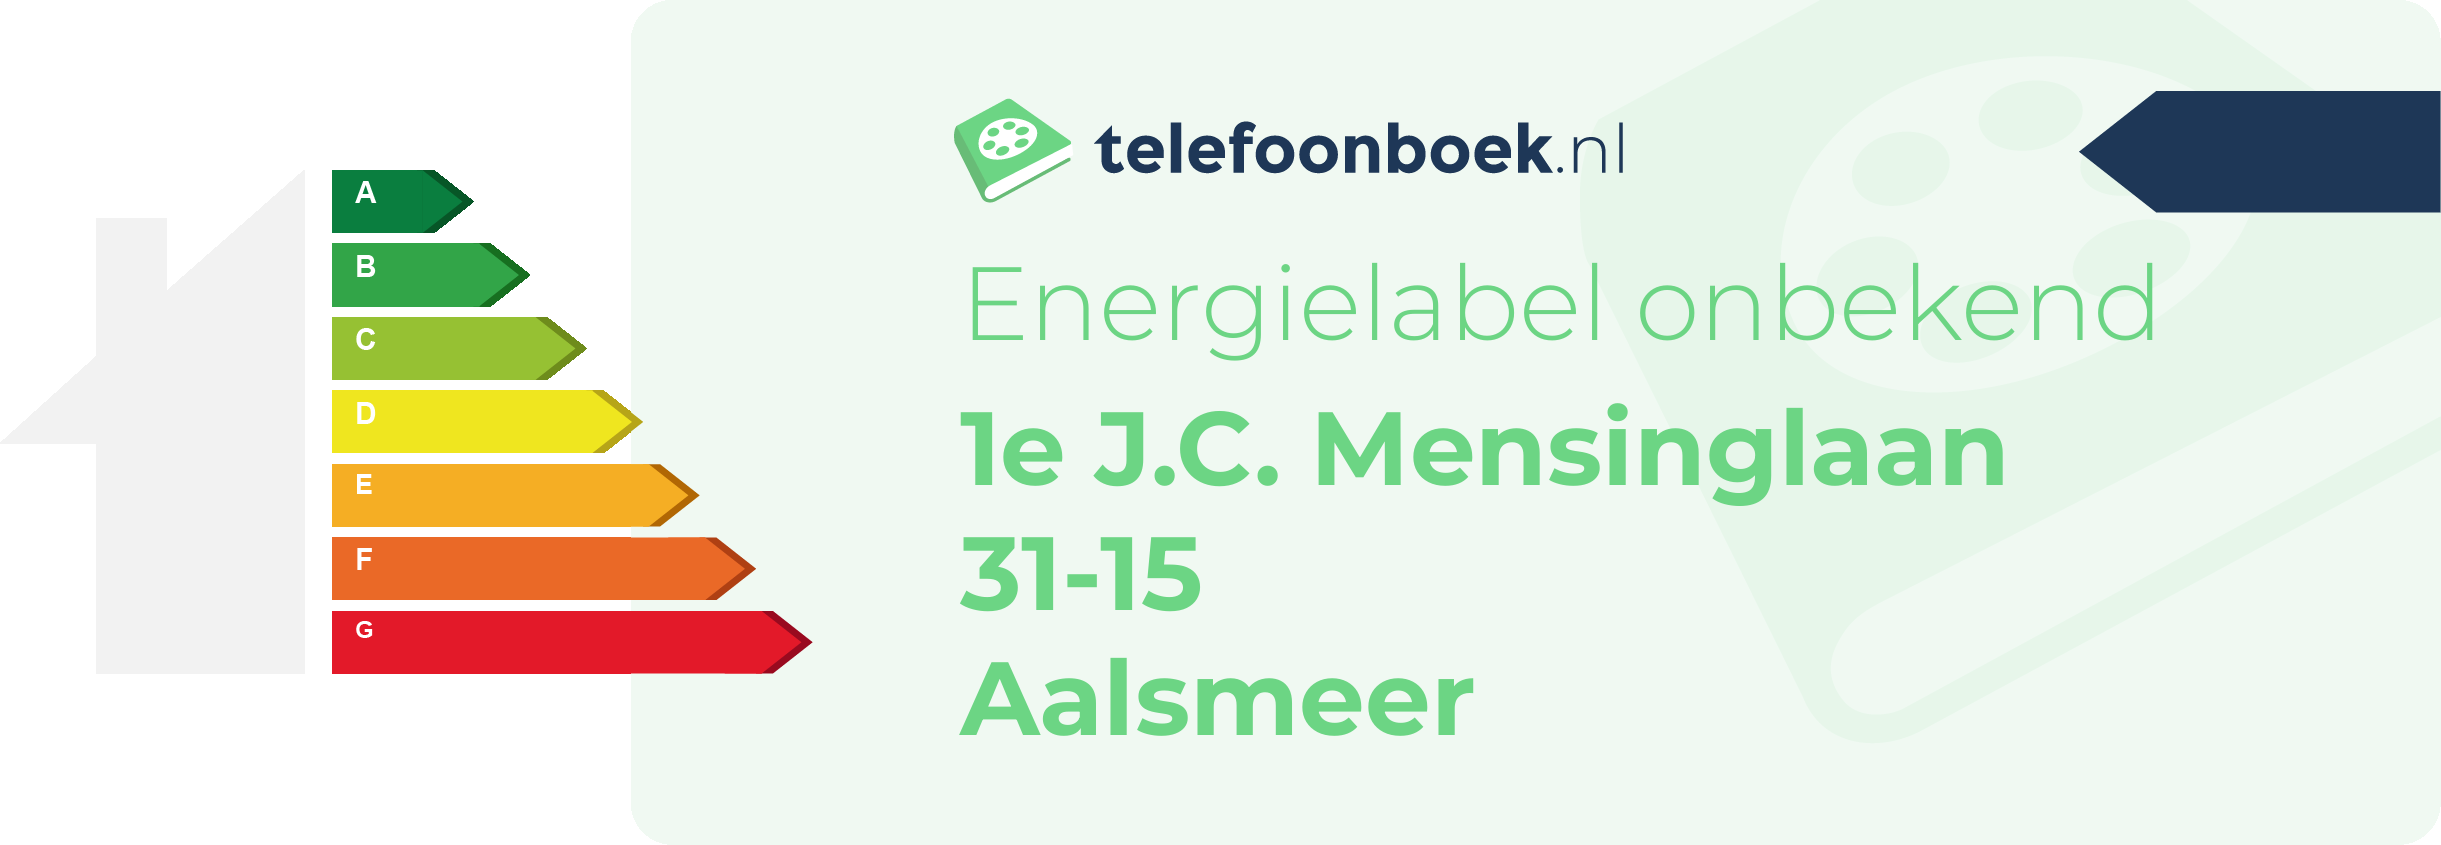 Energielabel 1e J.C. Mensinglaan 31-15 Aalsmeer